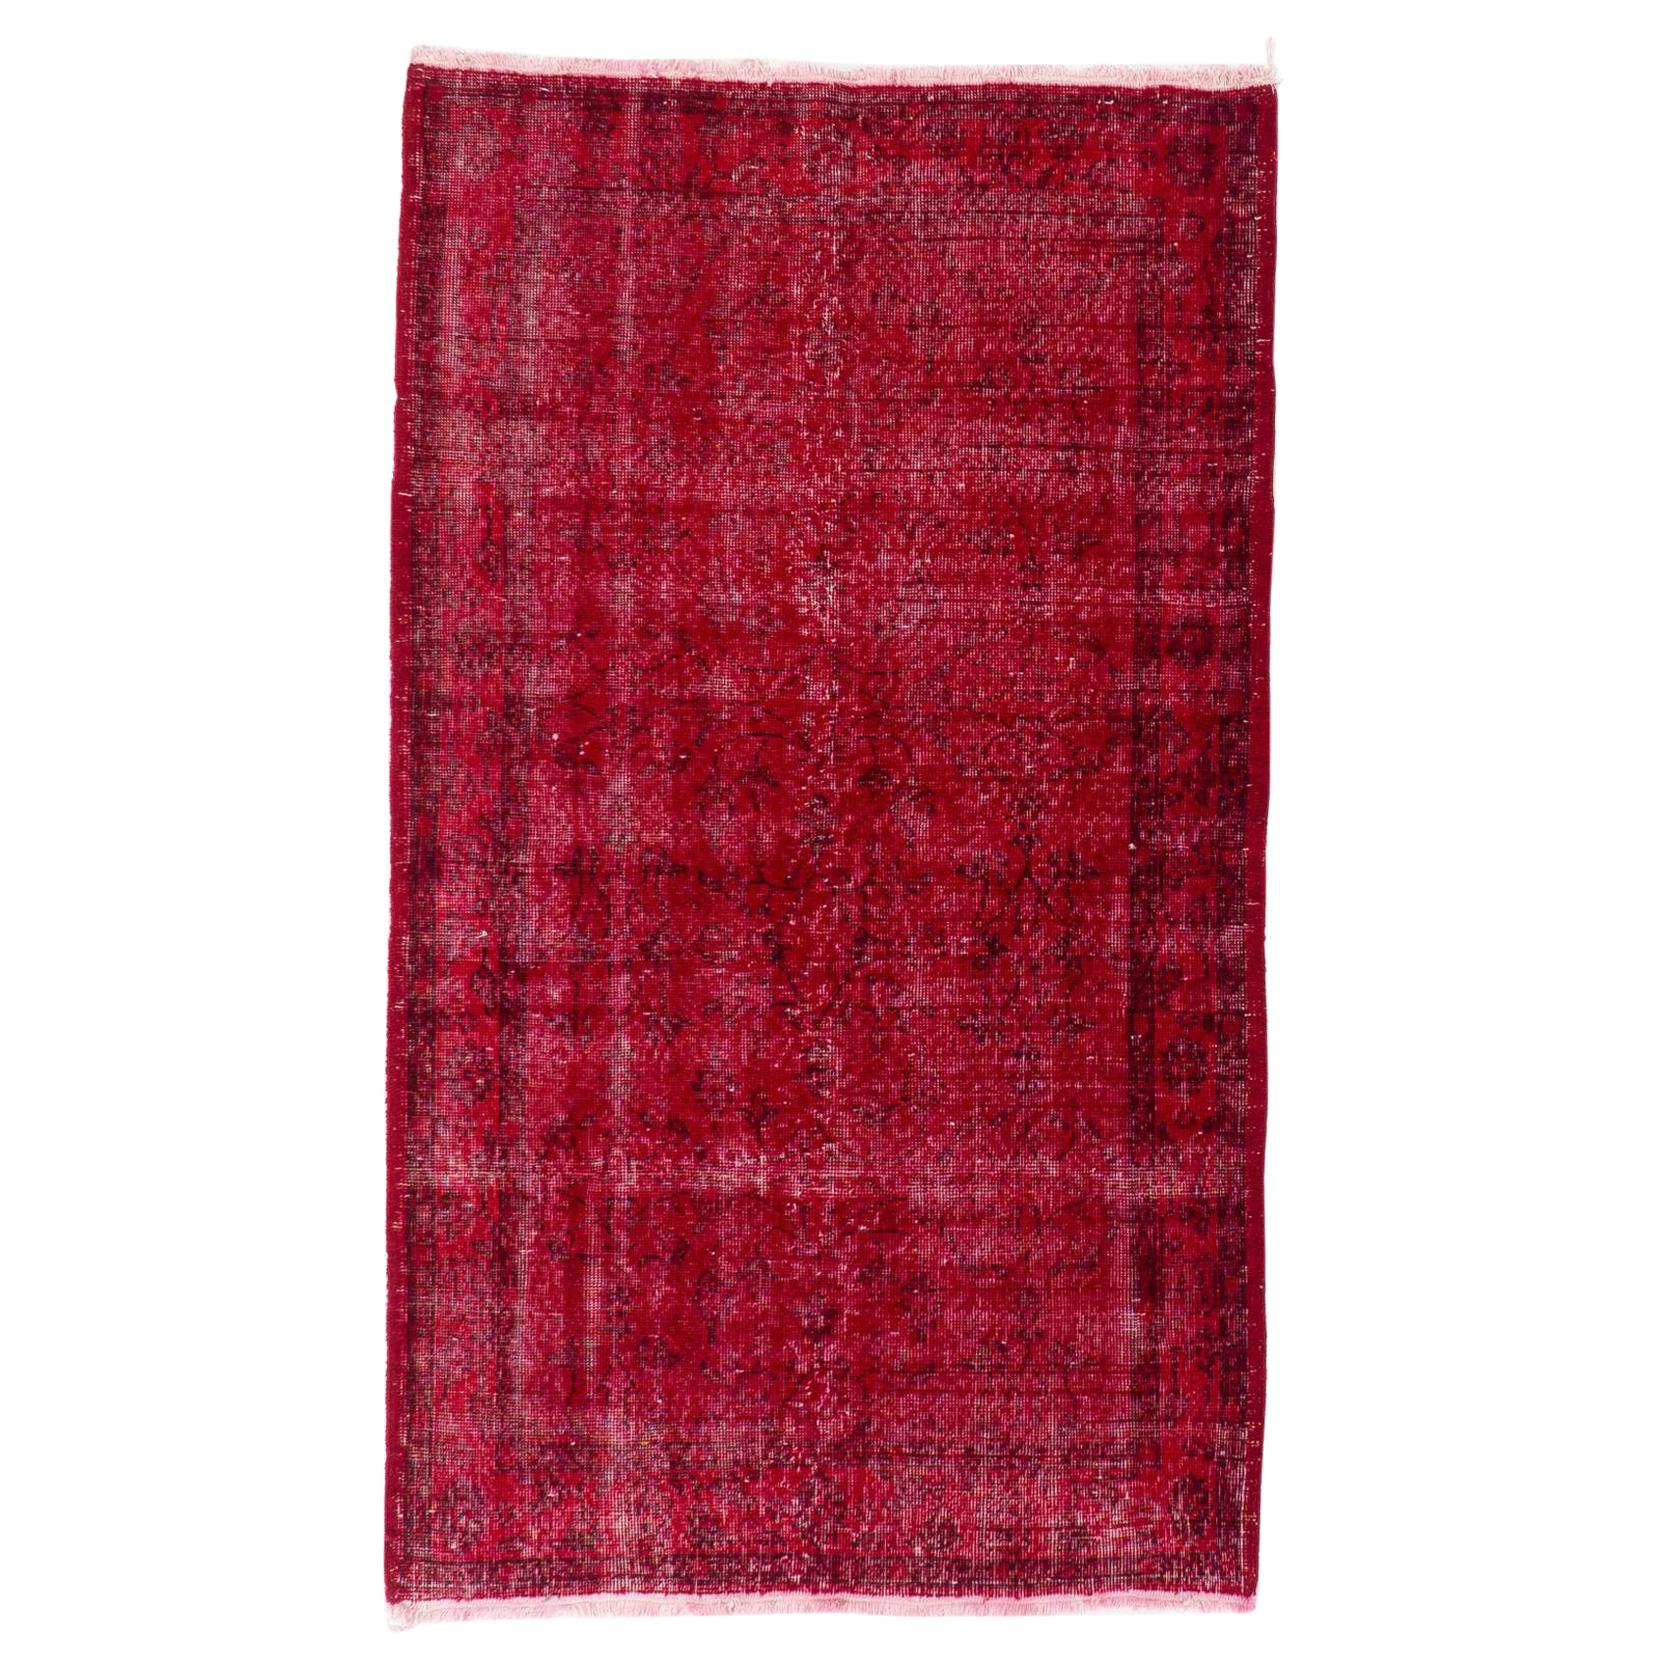 4x7 Fuß Vintage Handgefertigter türkischer Akzent-Teppich in Rot, ideal für moderne Inneneinrichtung